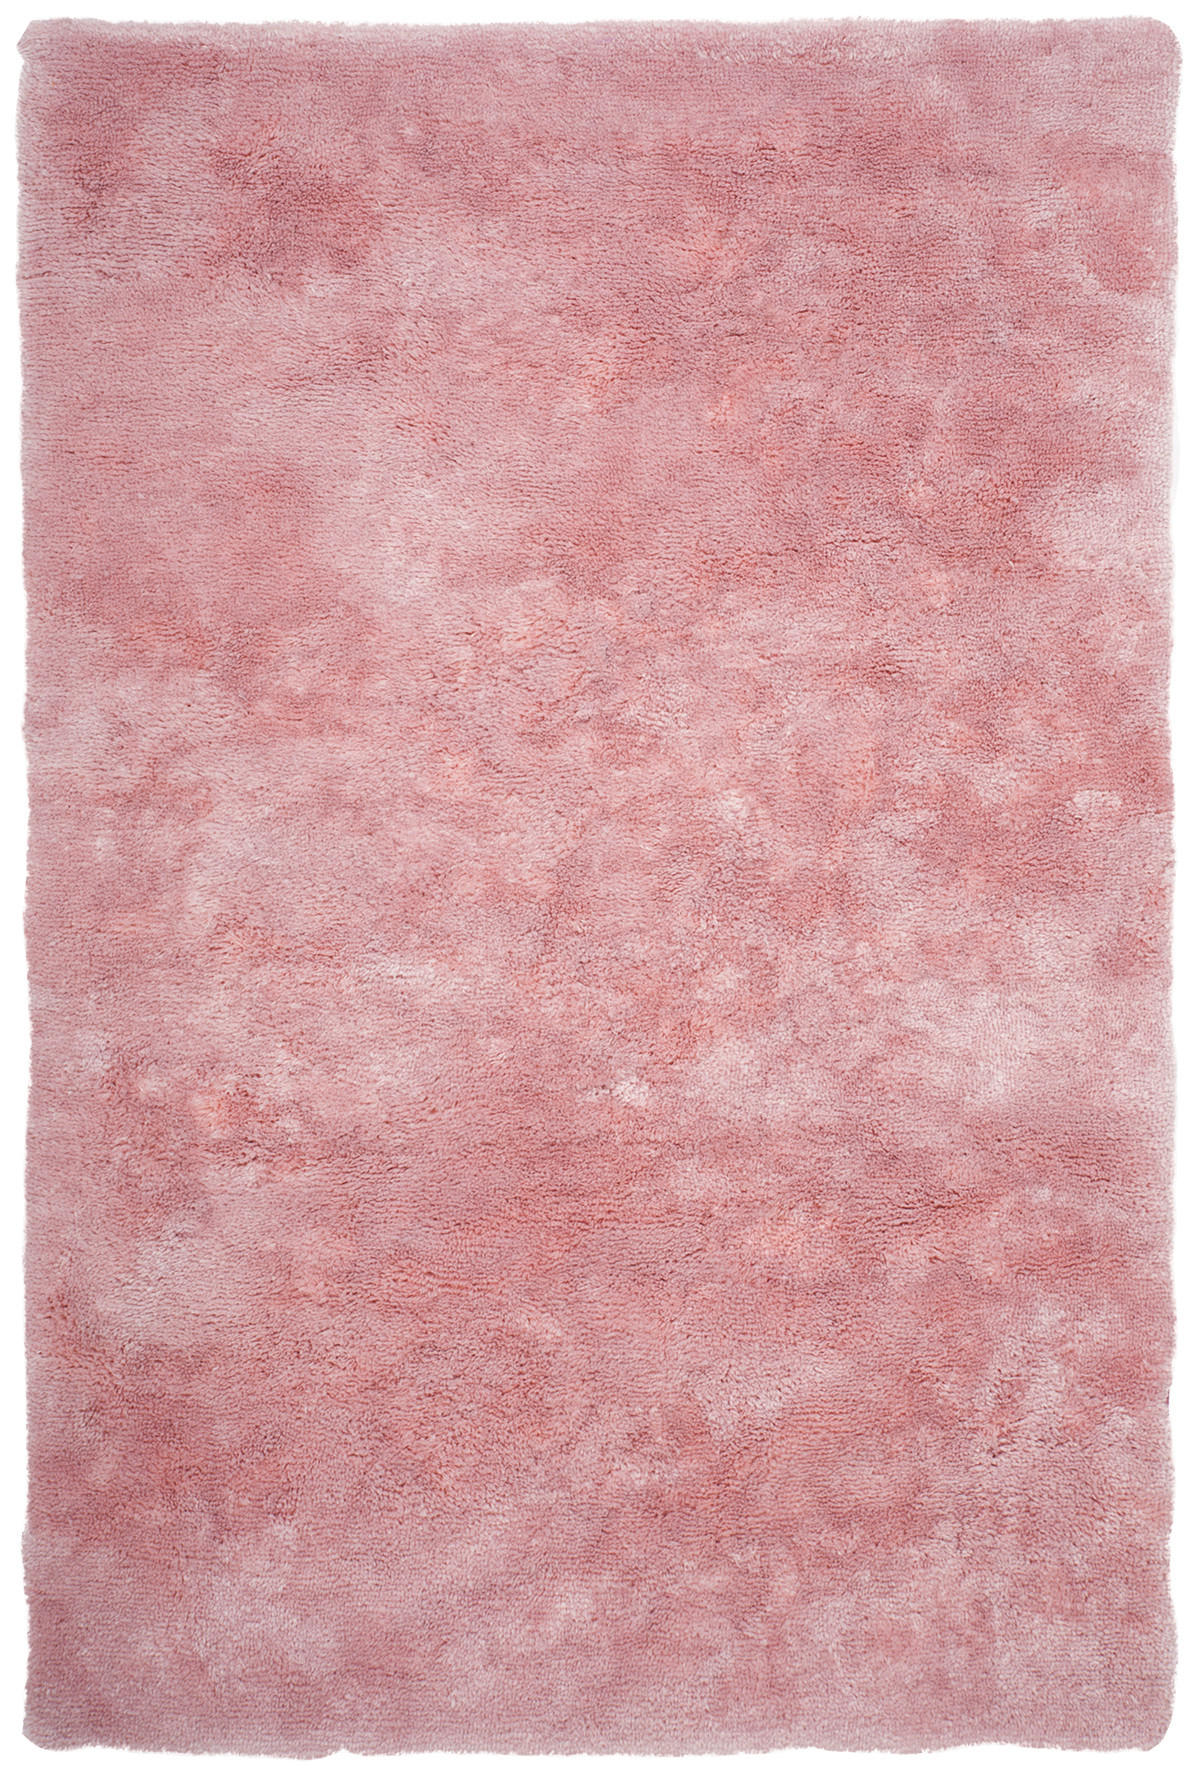 WEBTEPPICH 60/110 cm My Curacao  - Pink, KONVENTIONELL, Textil (60/110cm)